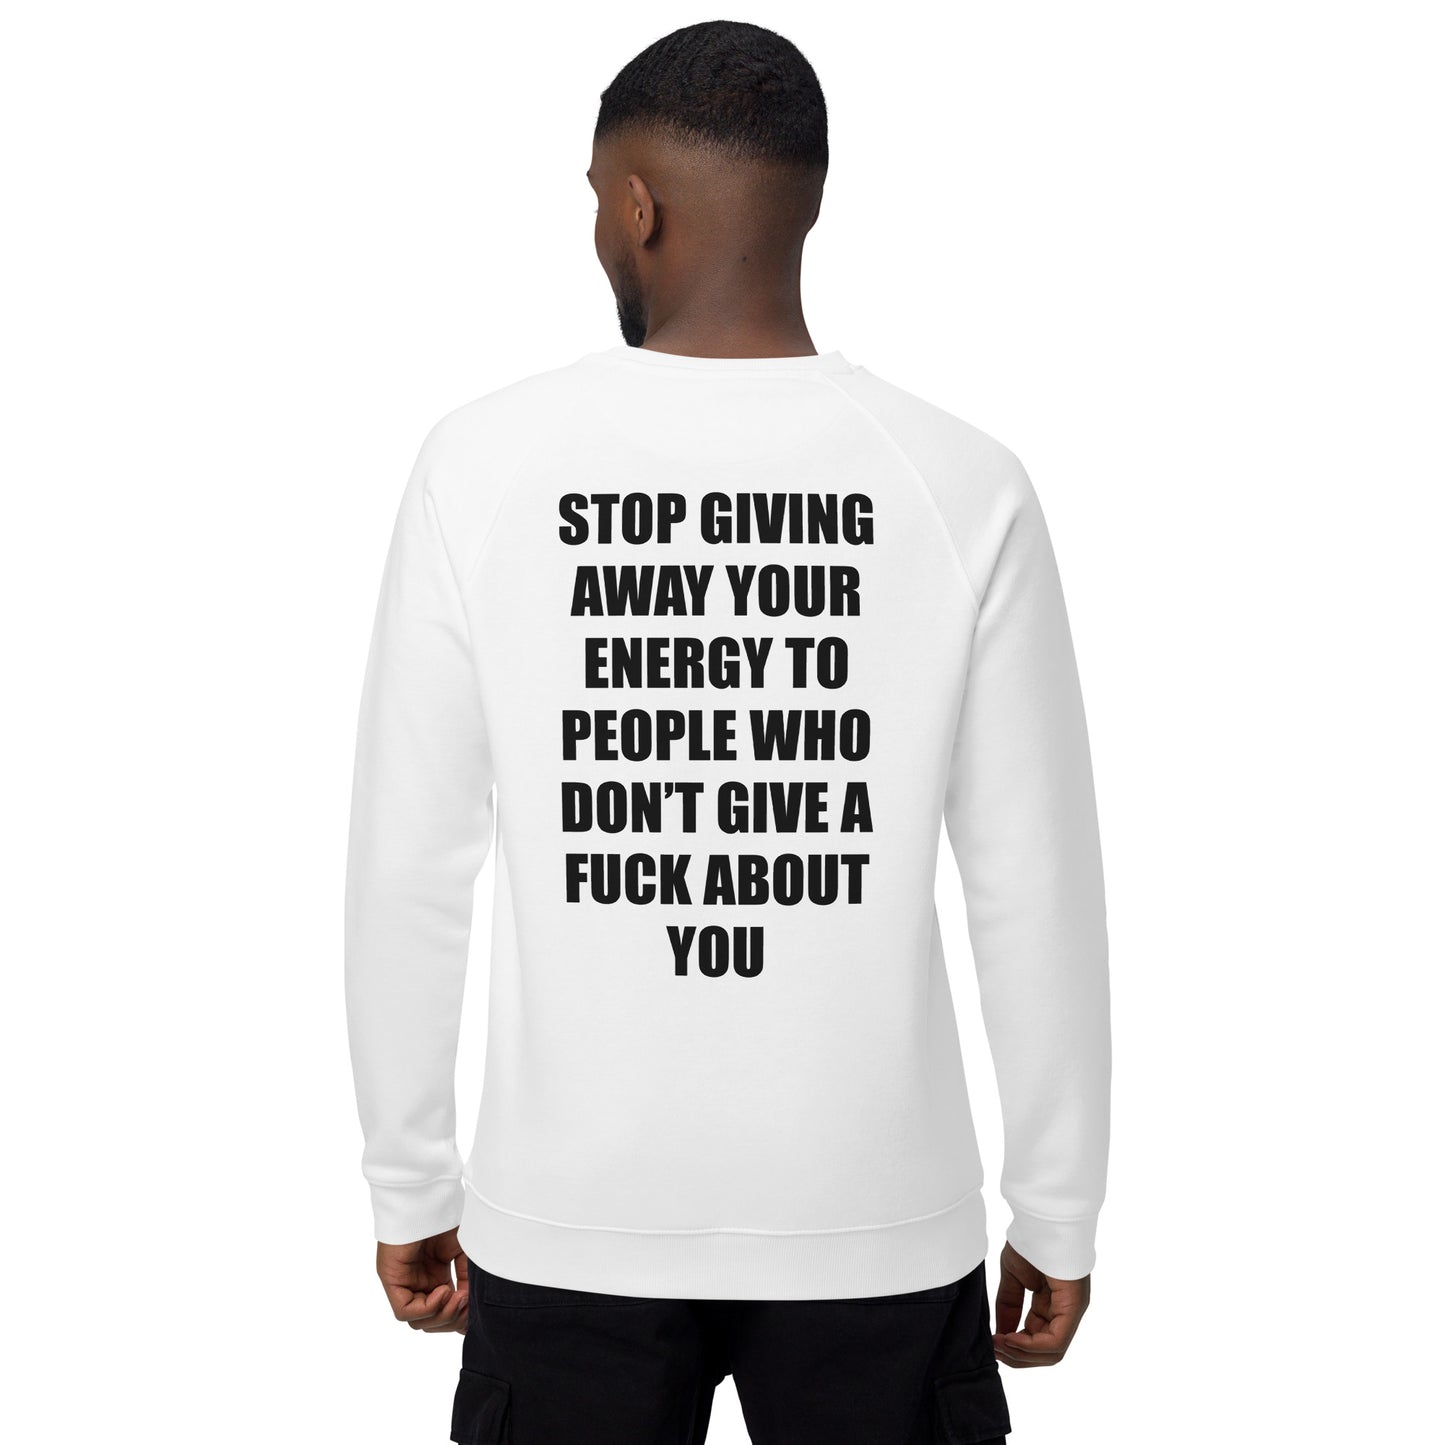 PROTECT YOUR ENERGY / STOP GIVING AWAY - Unisex organic raglan sweatshirt